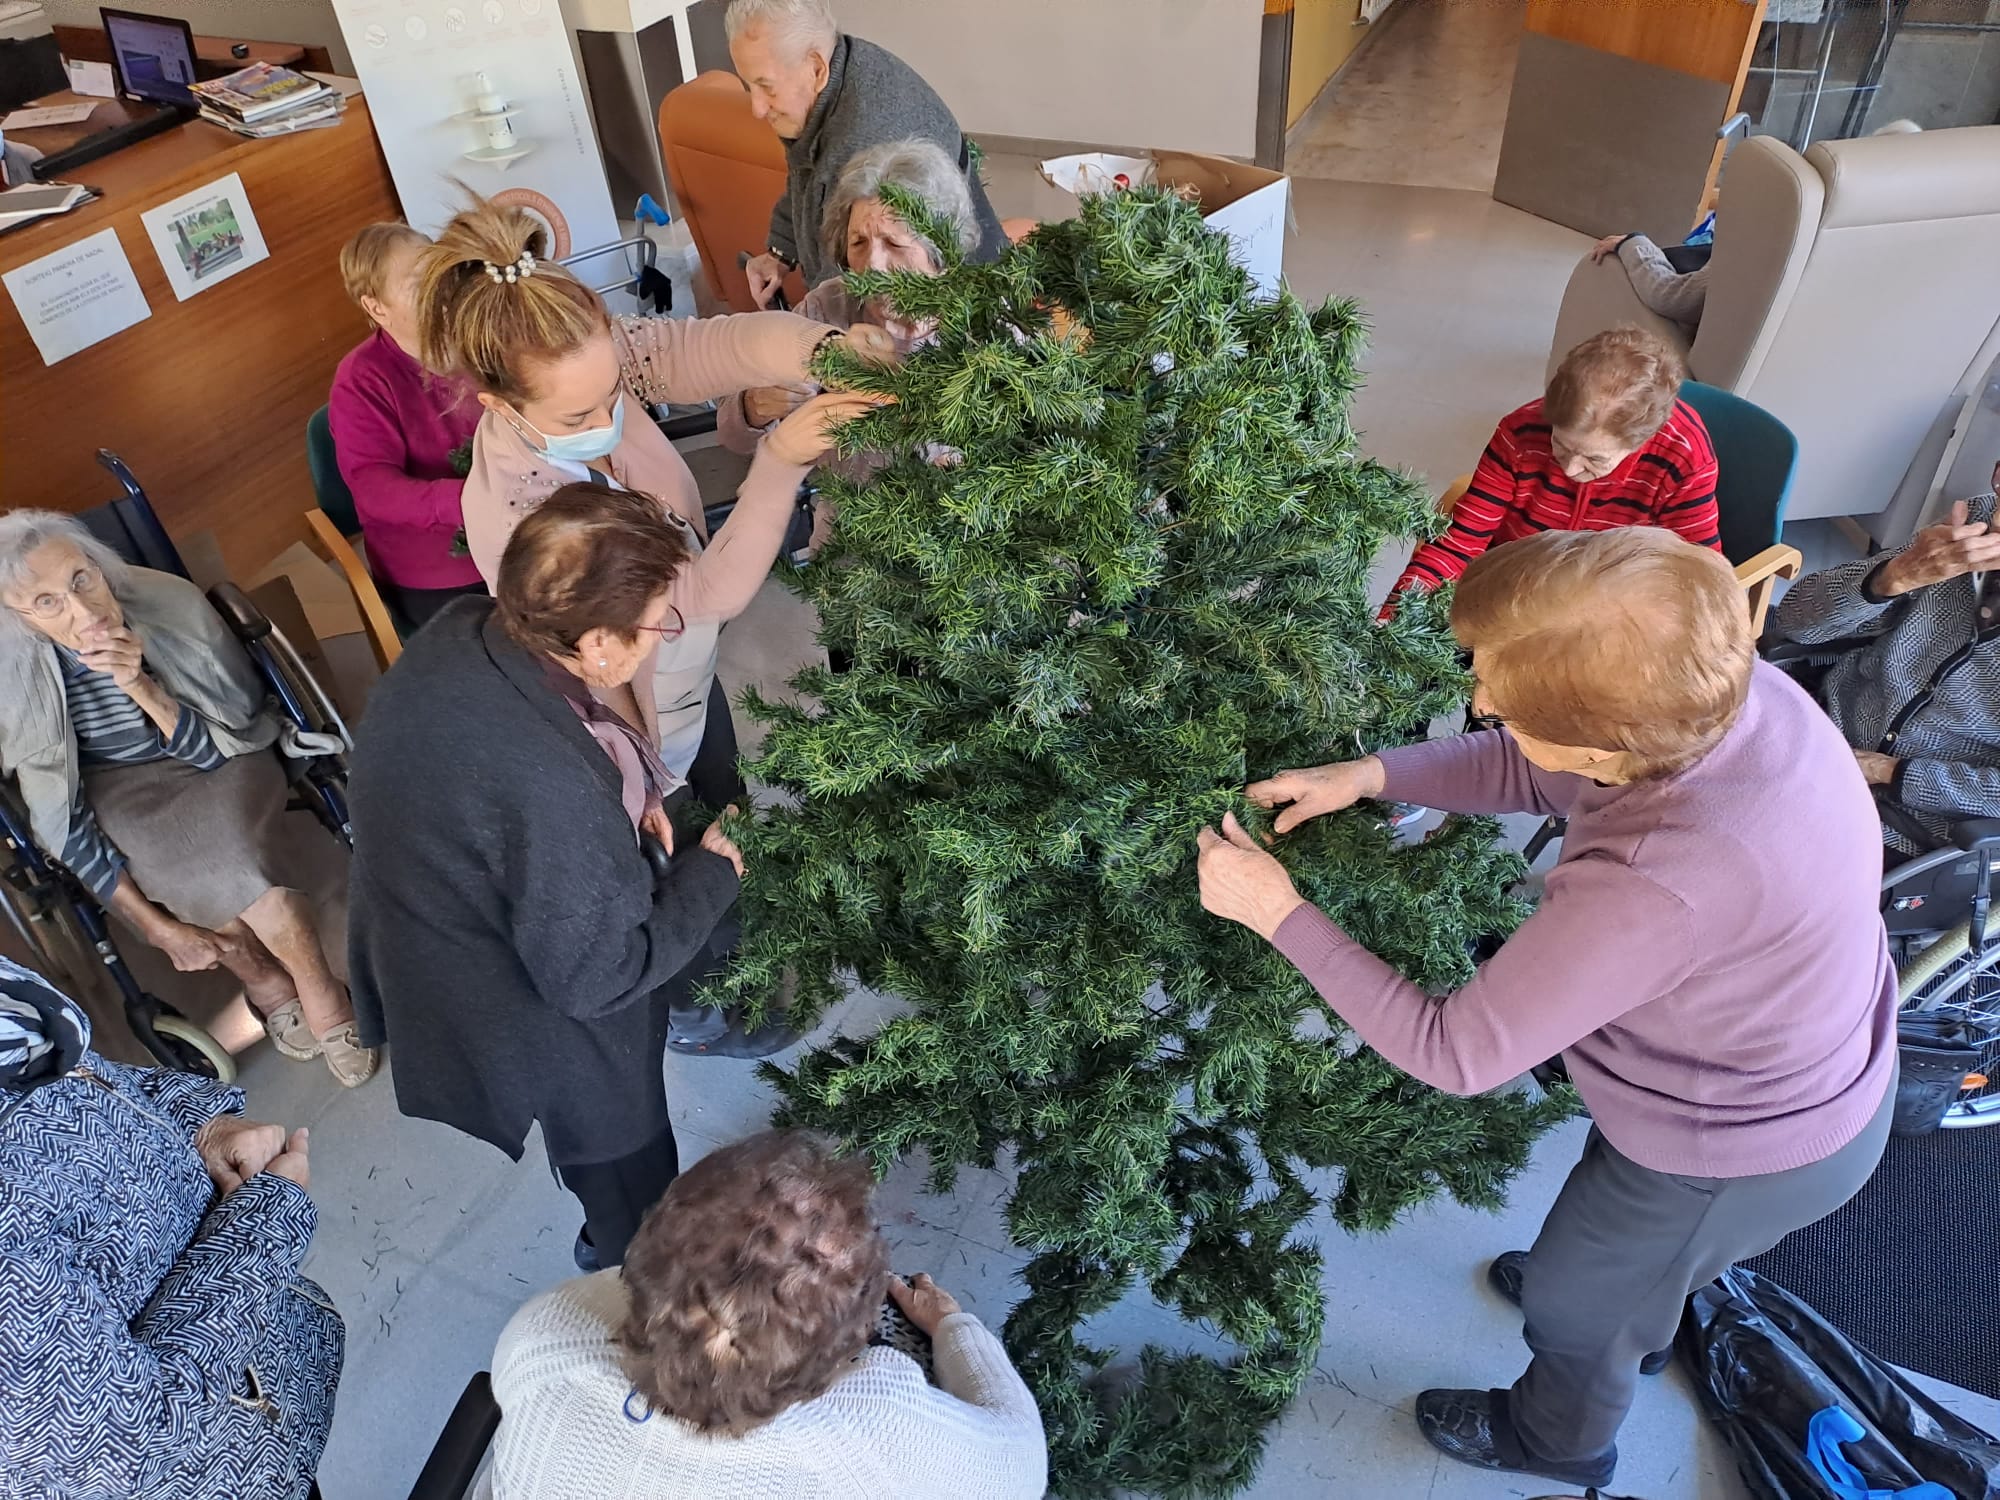 gent gran decorant l'arbre de nadal